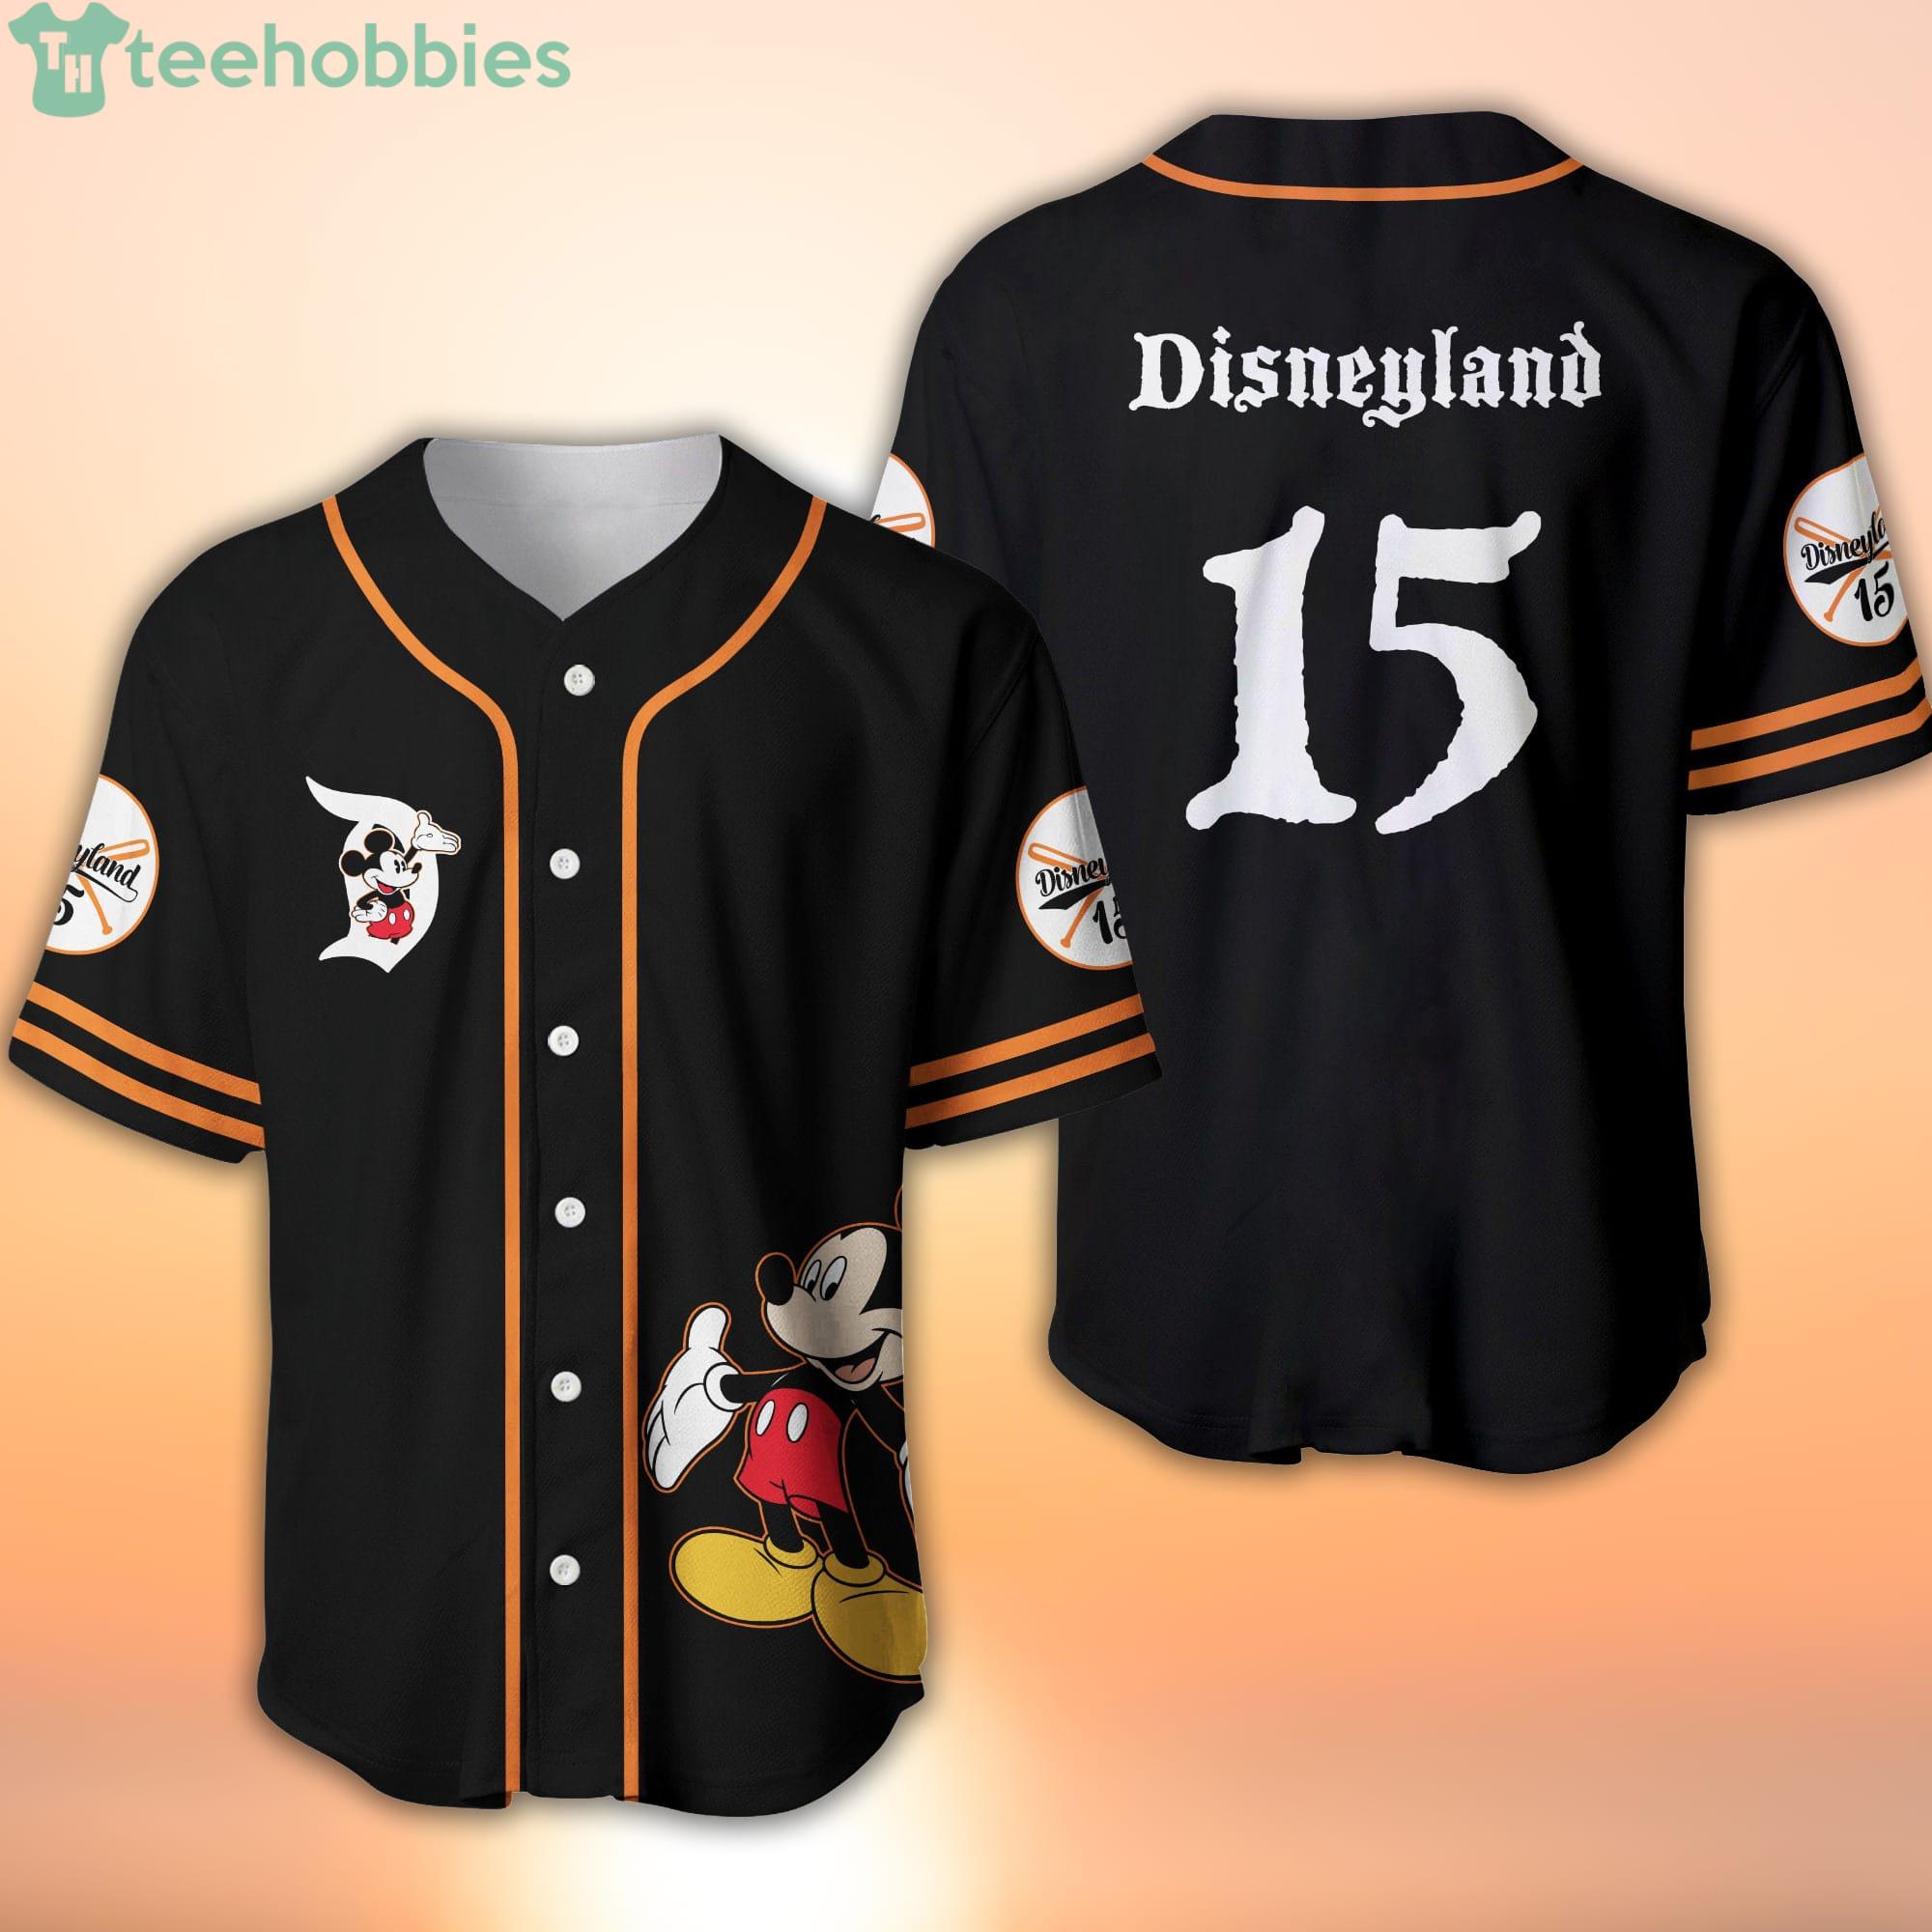 Personalized Disneyland Walt Disney World Baseball Jersey Shirt Size S-5XL